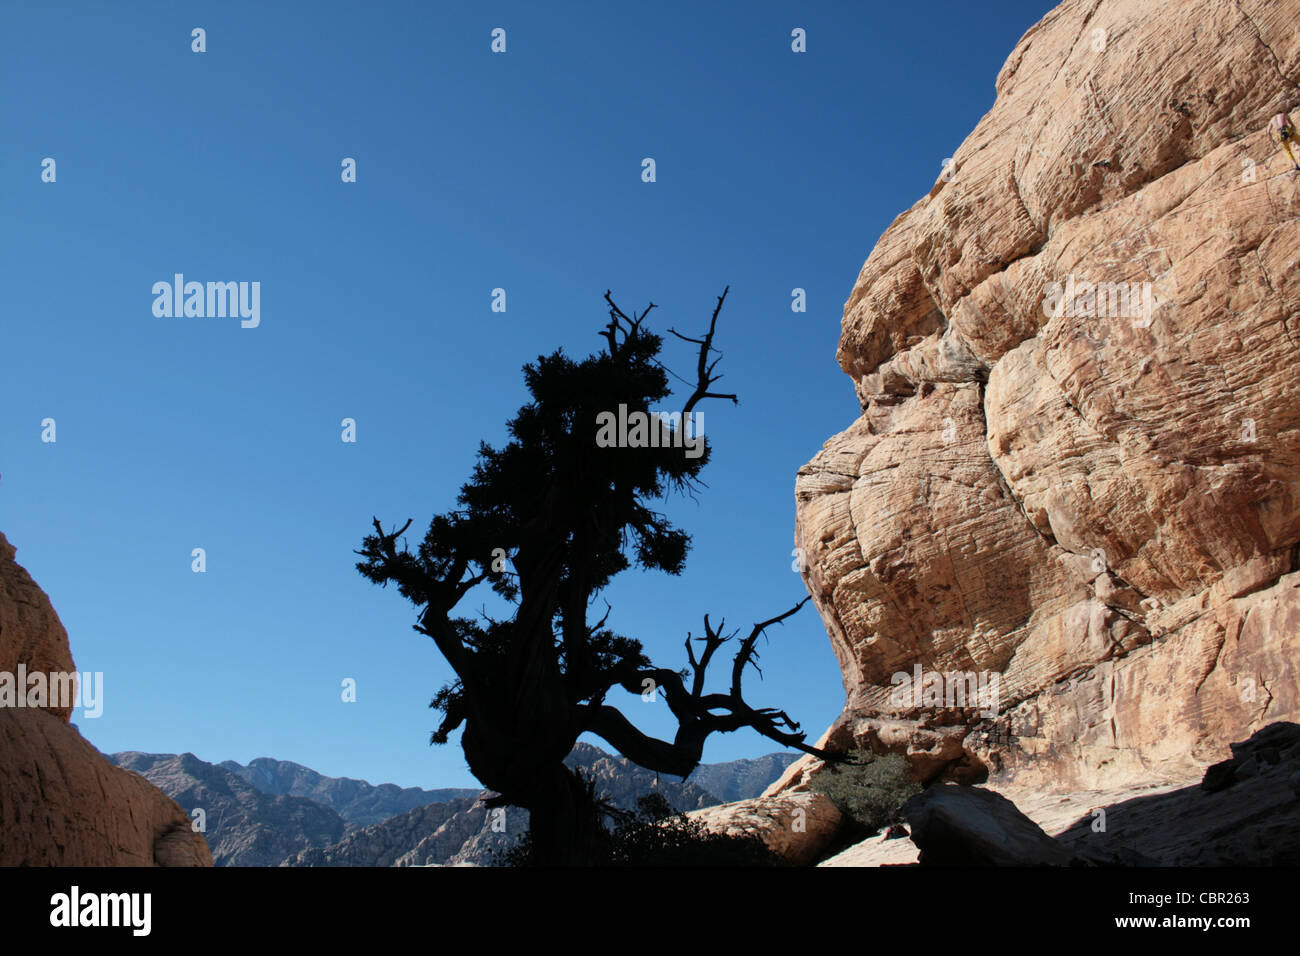 Silueta de árbol en un retorcido Desert Canyon arenisca Foto de stock